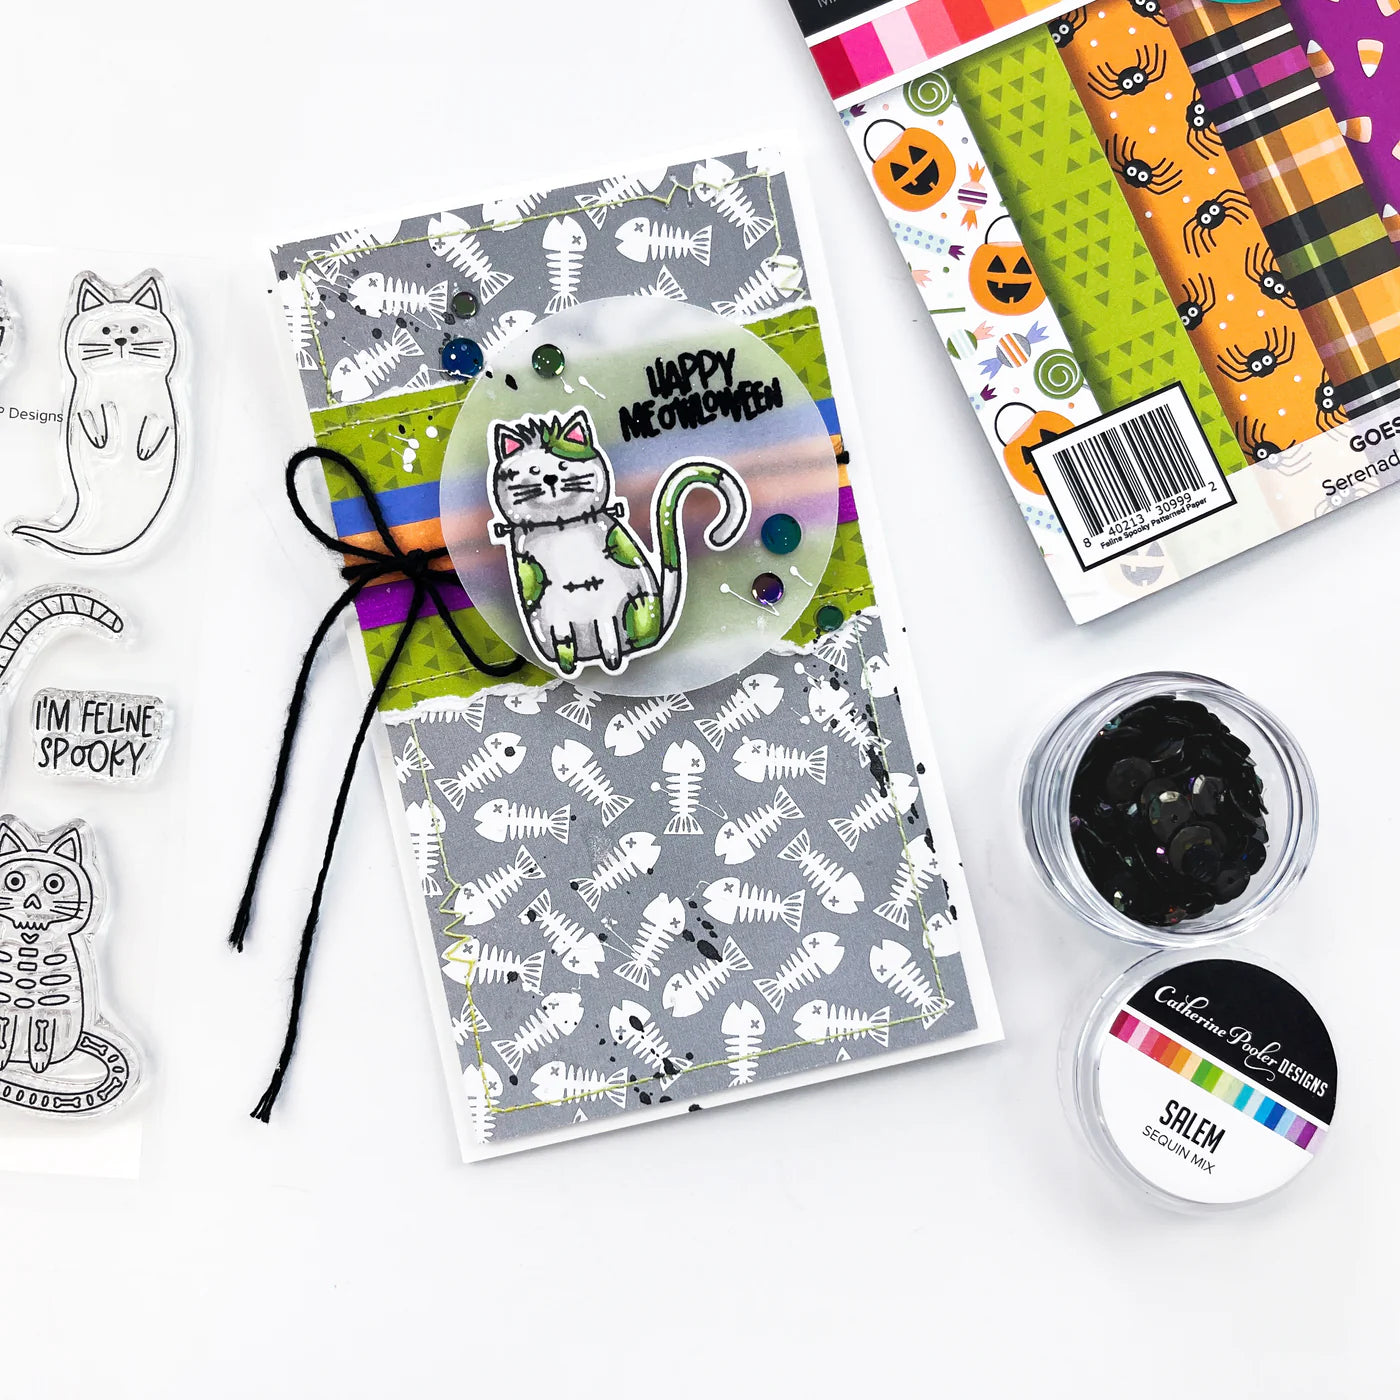 Feline Spooky Halloween 6x6 Pattern Paper Pad - Catherine Pooler Designs